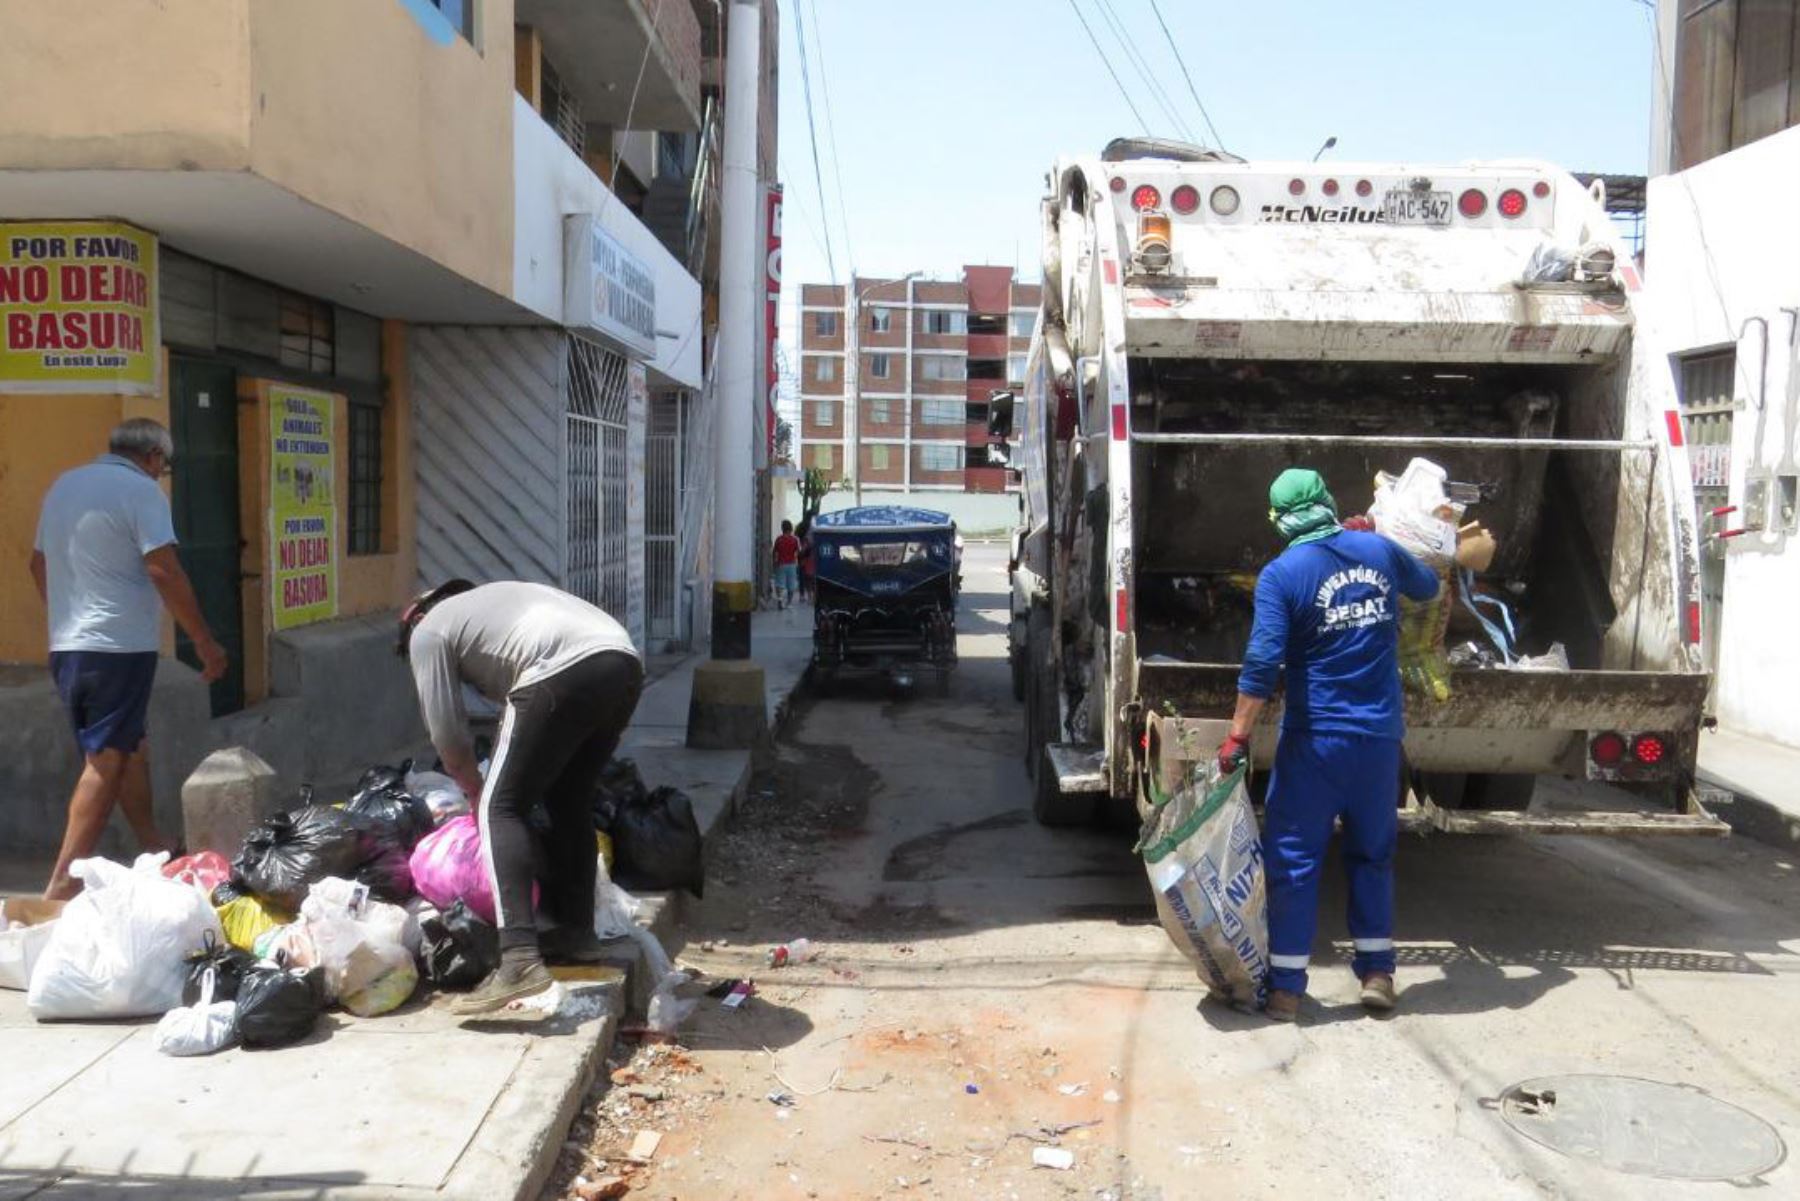 Entre noviembre y diciembre, los trabajadores han paralizado dos veces el servicio de limpieza, cuyas consecuencias aún se ven en la ciudad de Trujillo.